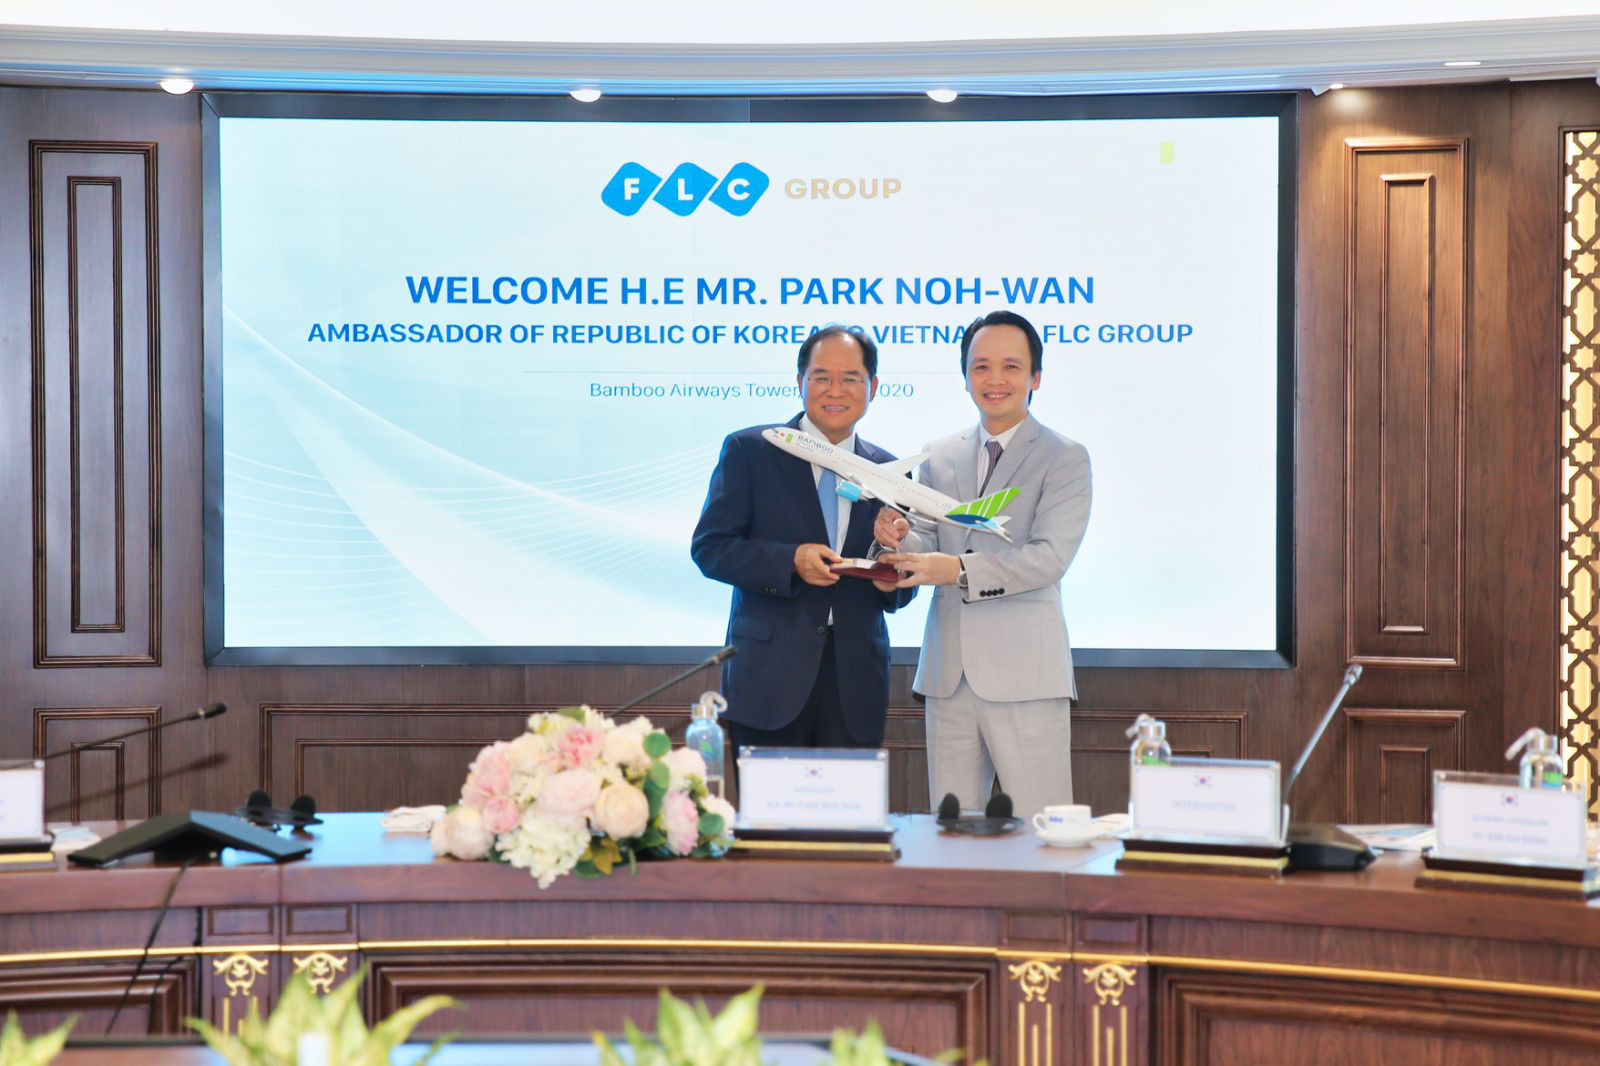 Đại sứ Hàn Quốc tại Việt Nam: "Sẵn sàng là cầu nối giữa FLC và các đối tác Hàn Quốc"